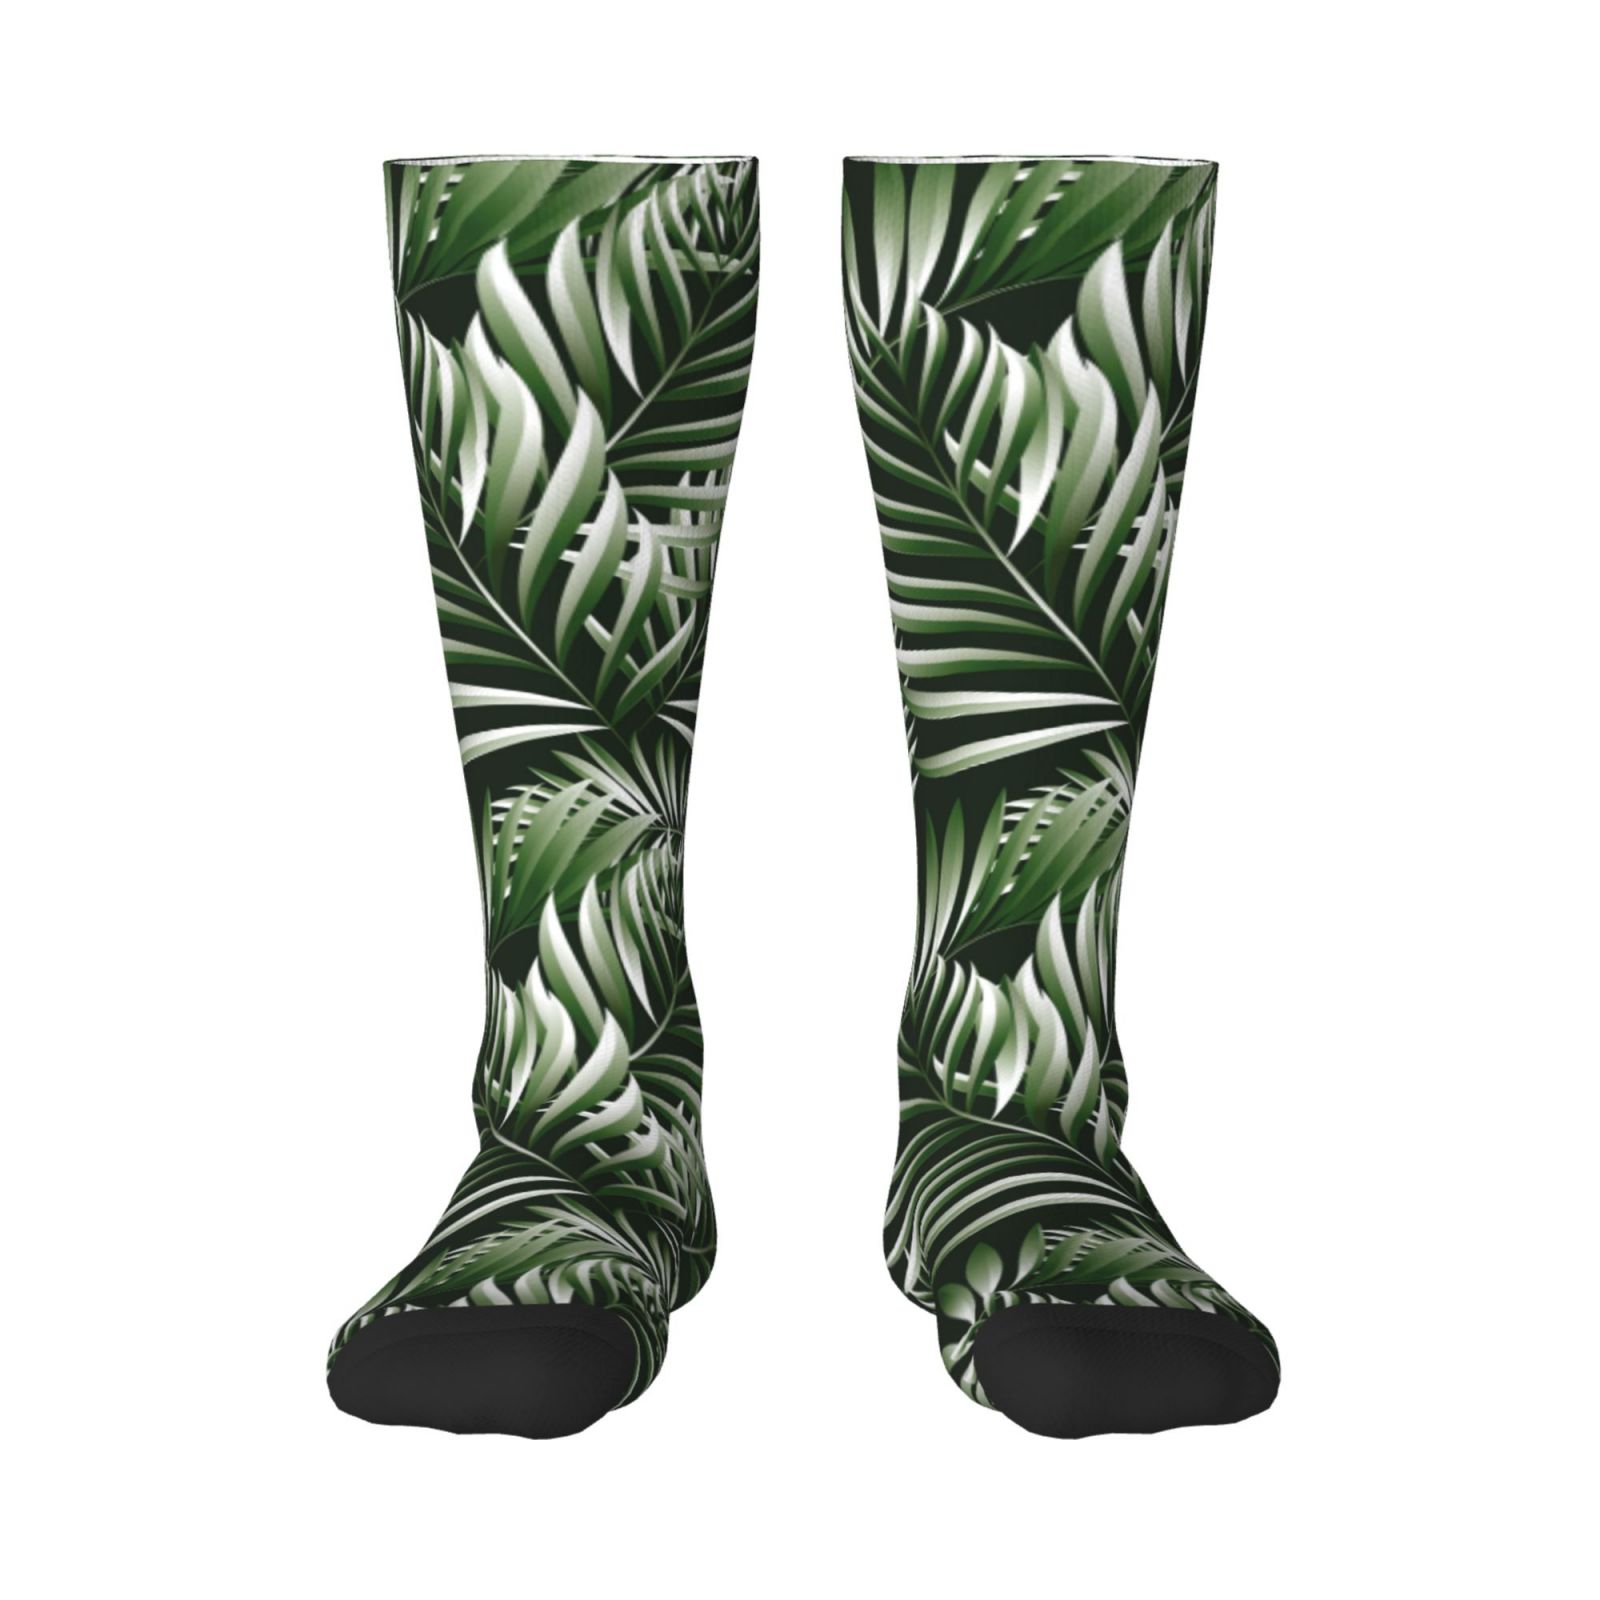 Easygdp Tropical Palm Leaves1 Soccer Socks Sport Knee High Socks Calf ...